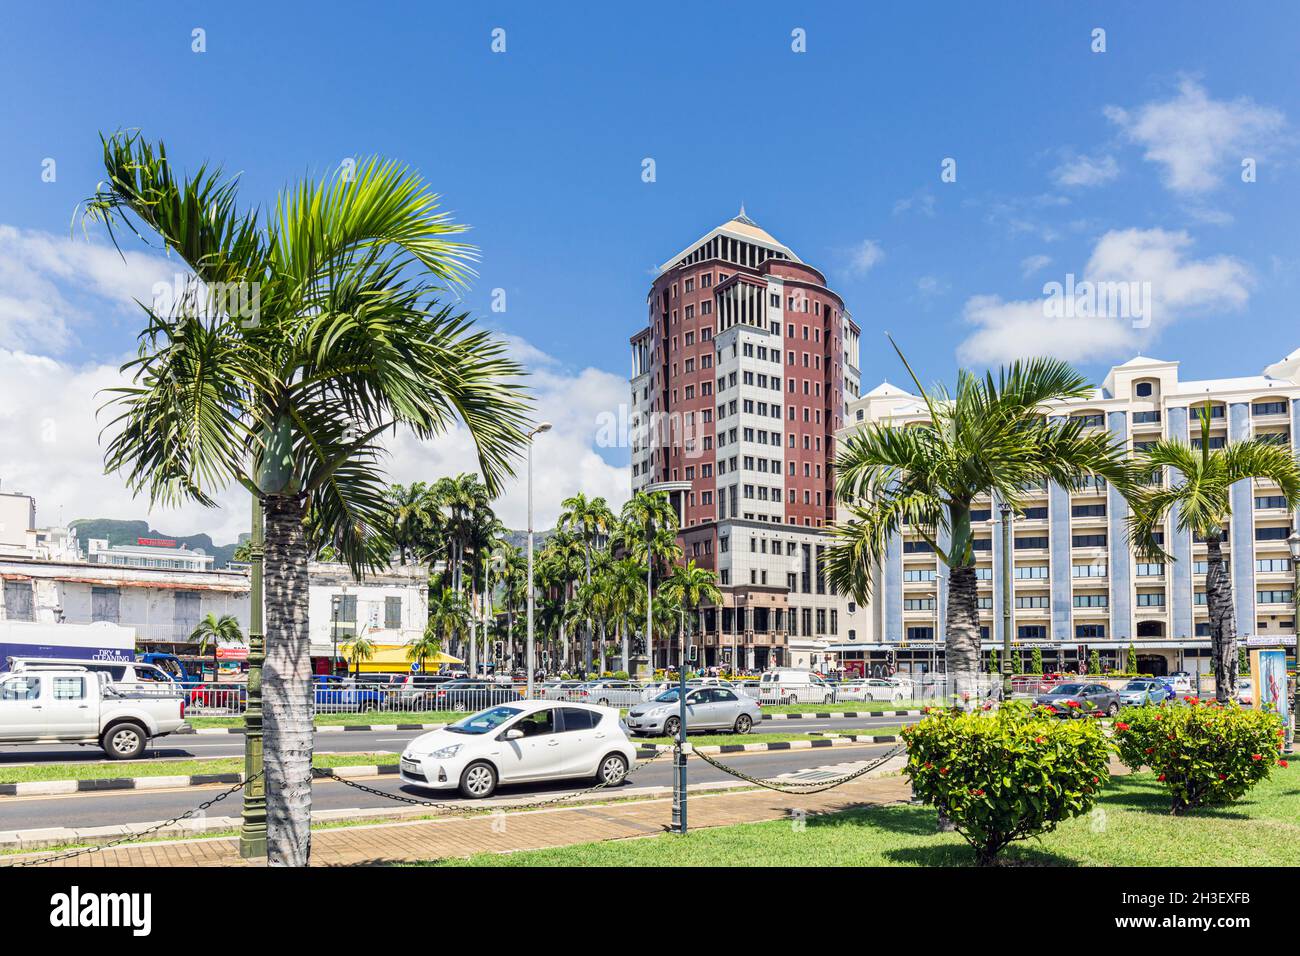 La Torre della Banca di Stato, Port Louis, Mauritius, Isole Mascarene. L'edificio a 16 piani e' stato progettato da Campbell Reith Hill. Foto Stock